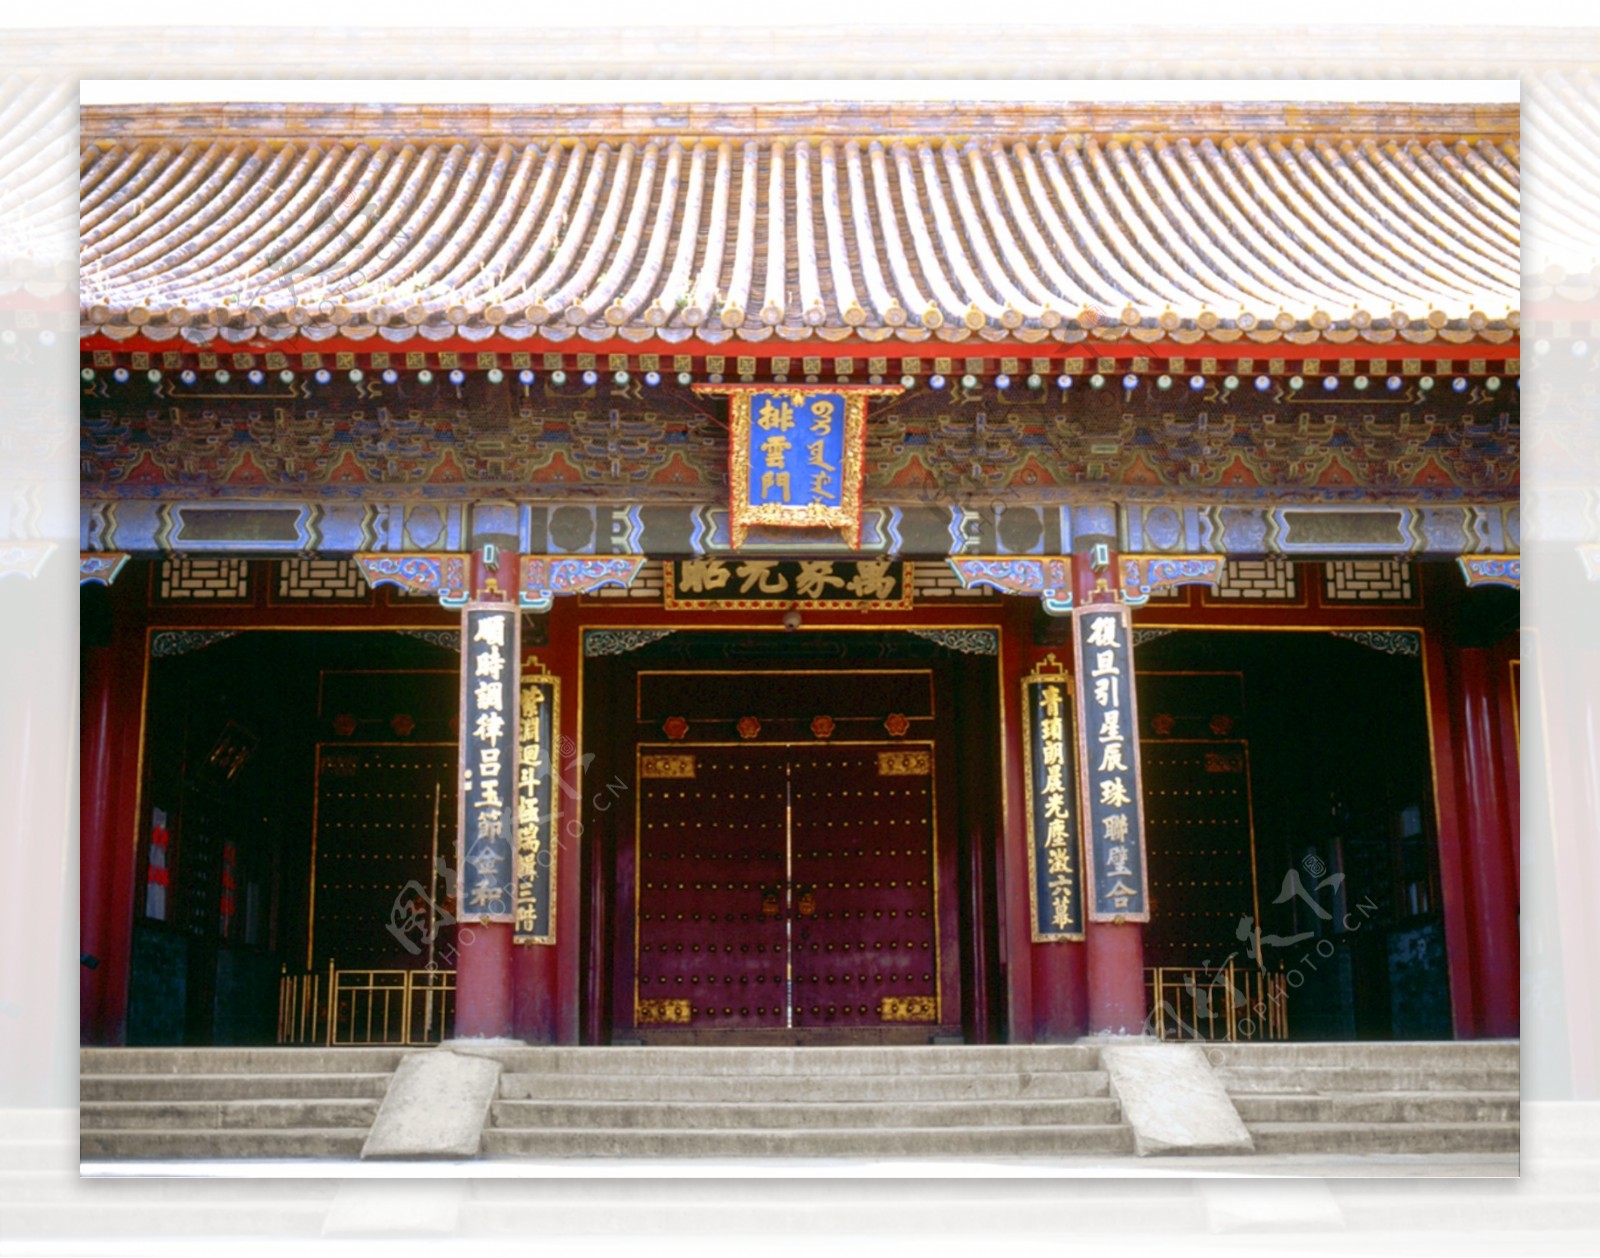 明清建筑庭院宫殿大门正面抱柱设计宫廷彩绘